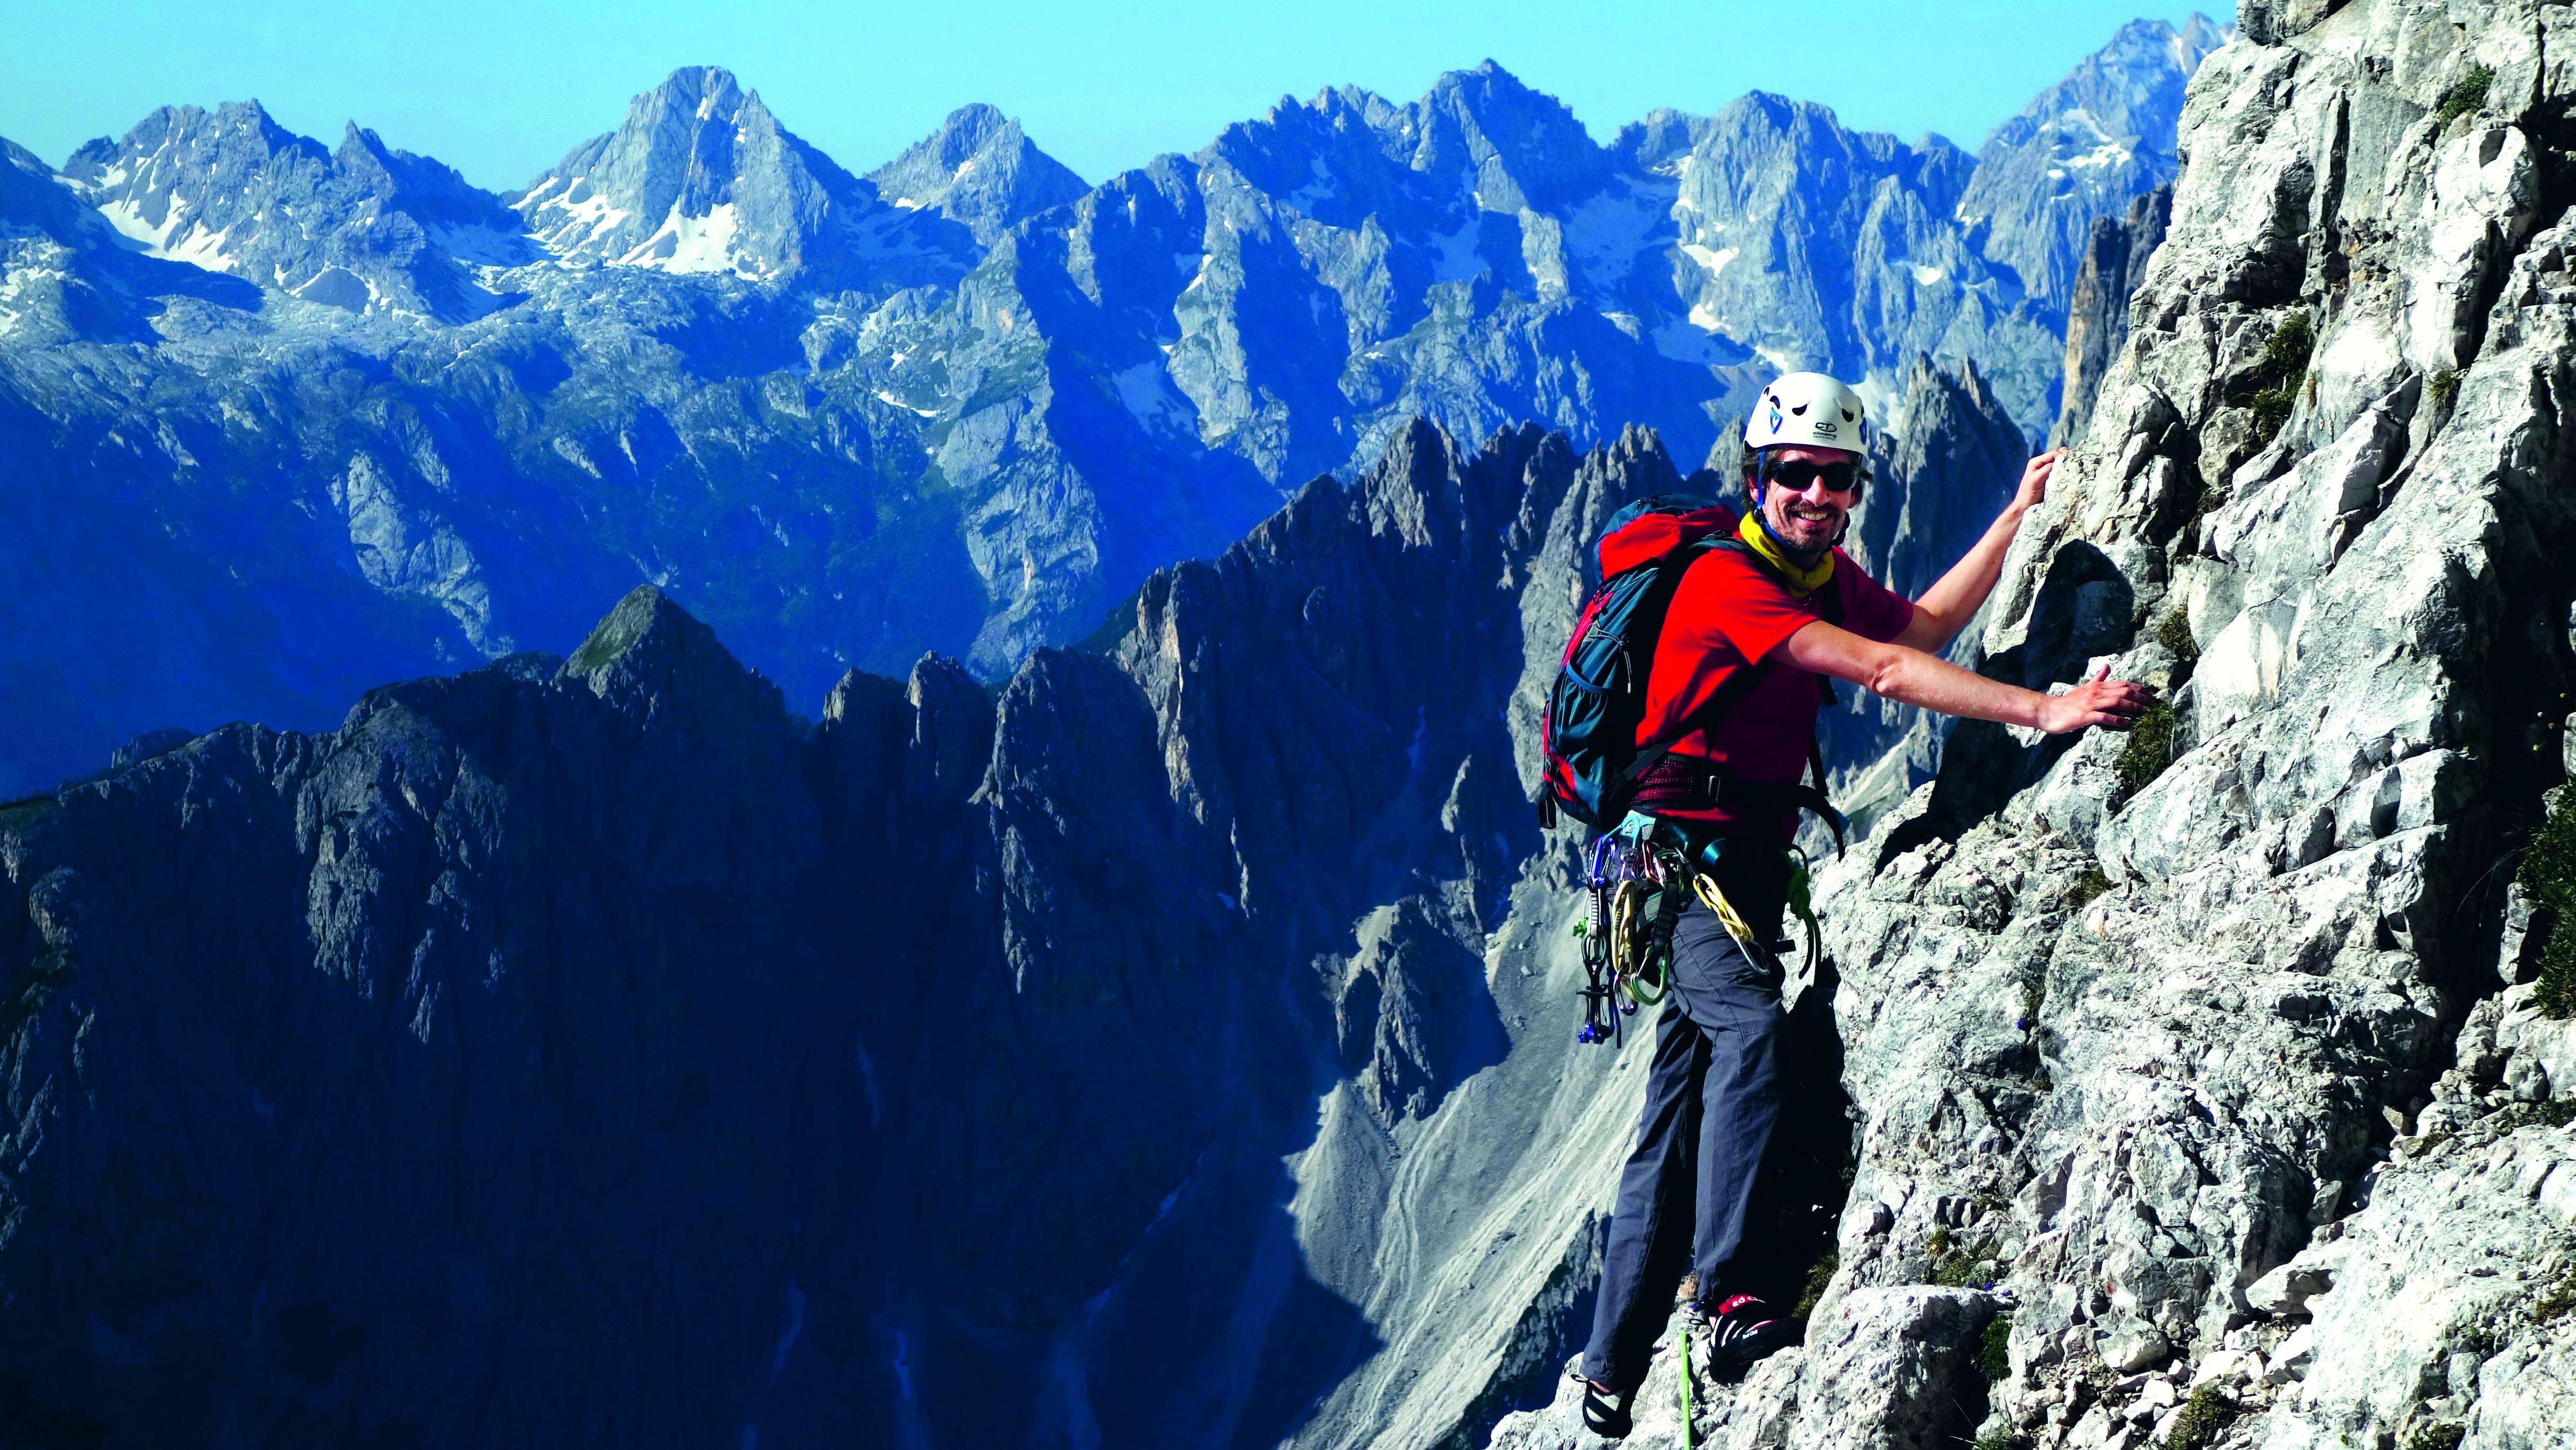 Raphael Haeger on the Three Peaks in the Dolomites.